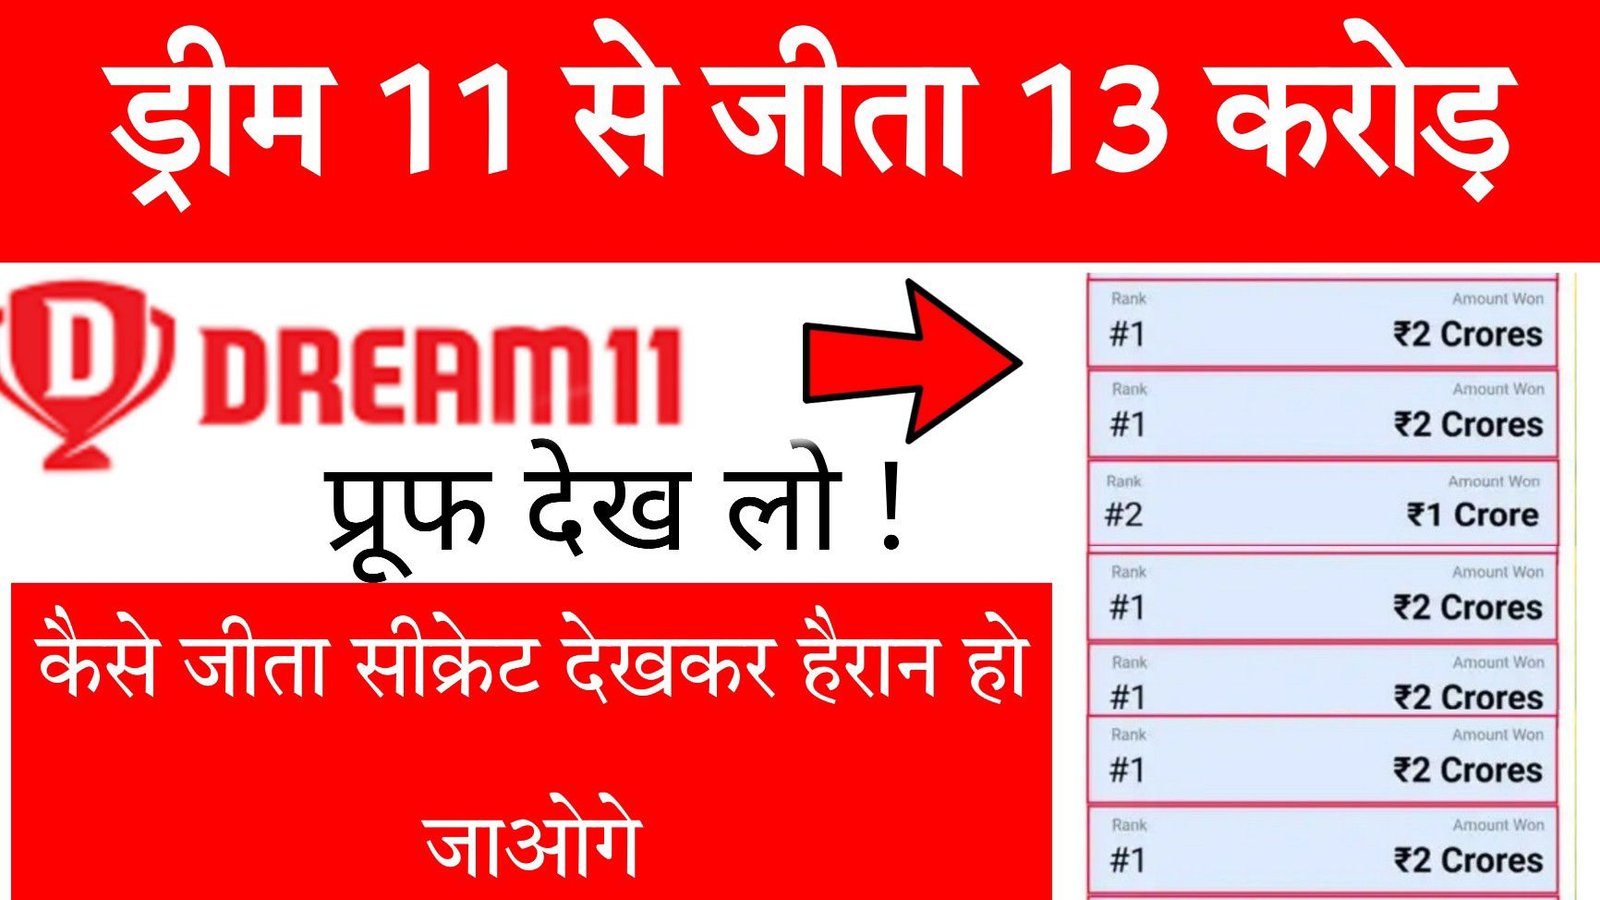 Dream11 पर जीते पुरे ₹13 करोड़, 6 बार आई 1st Rank, 1 बार आई 2nd Rank, फिर बताया ड्रीम11 पर फर्स्ट रैंक कैसे लाये!